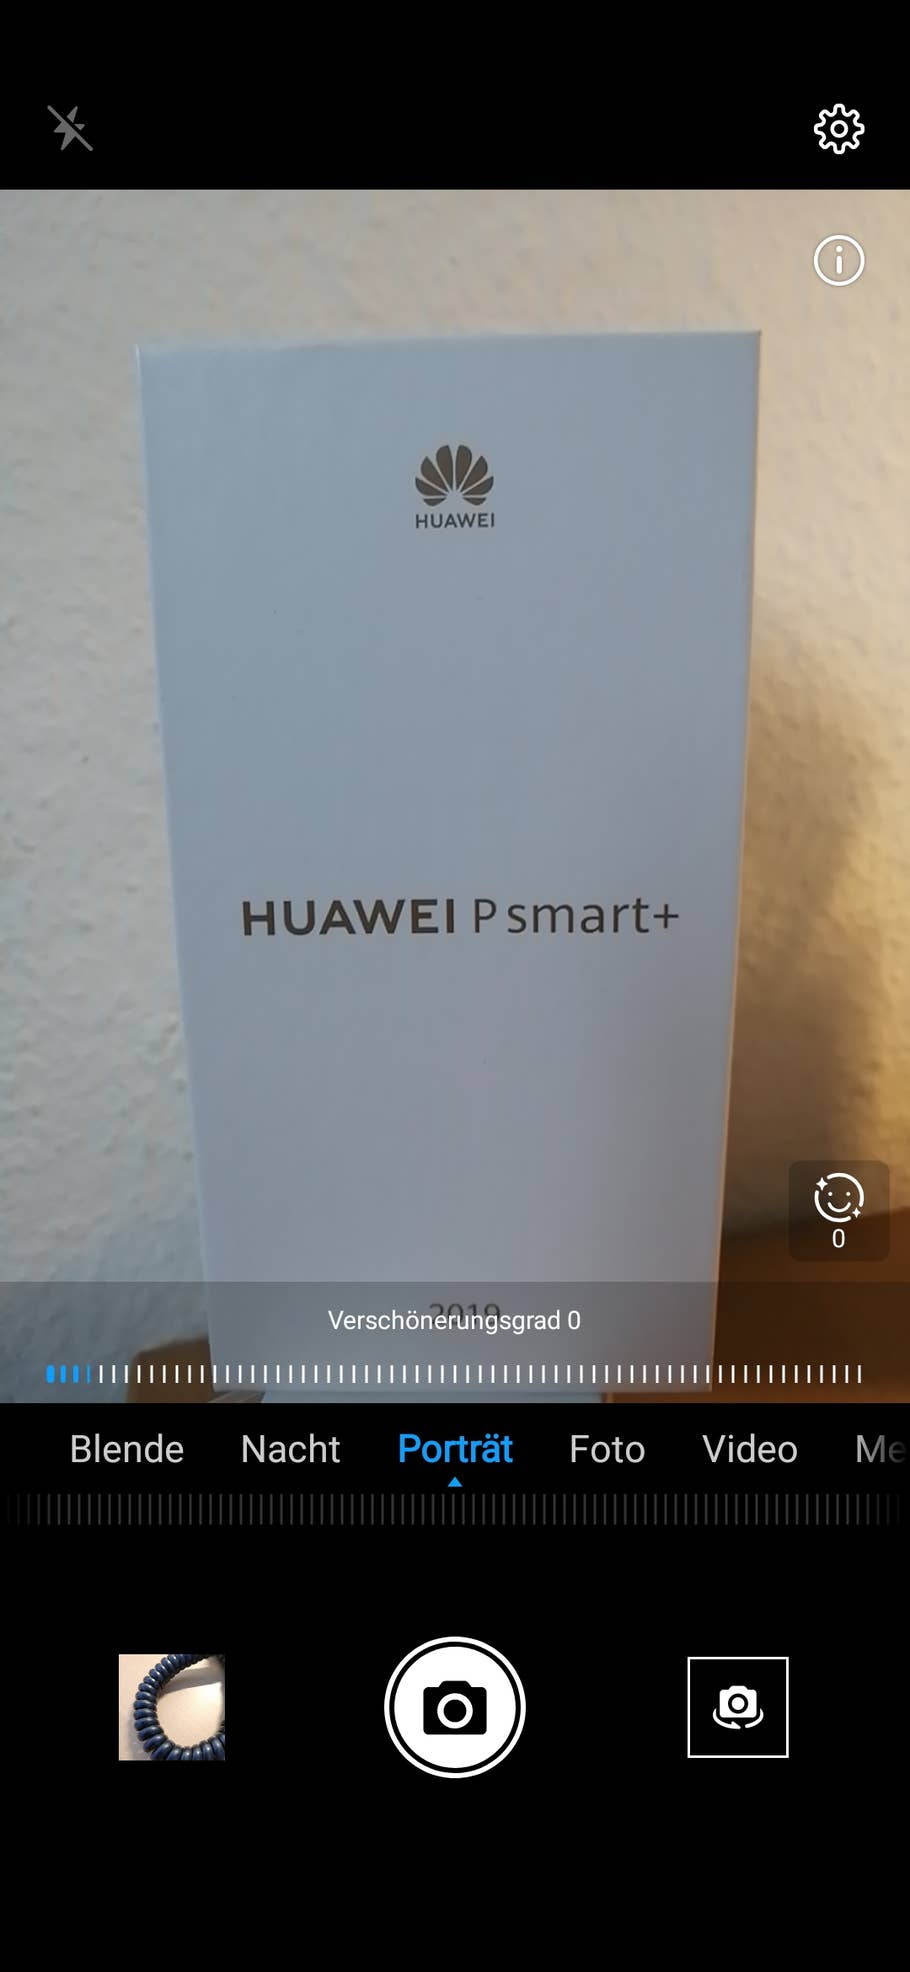 Huawei P smart+ 2019 Portrait